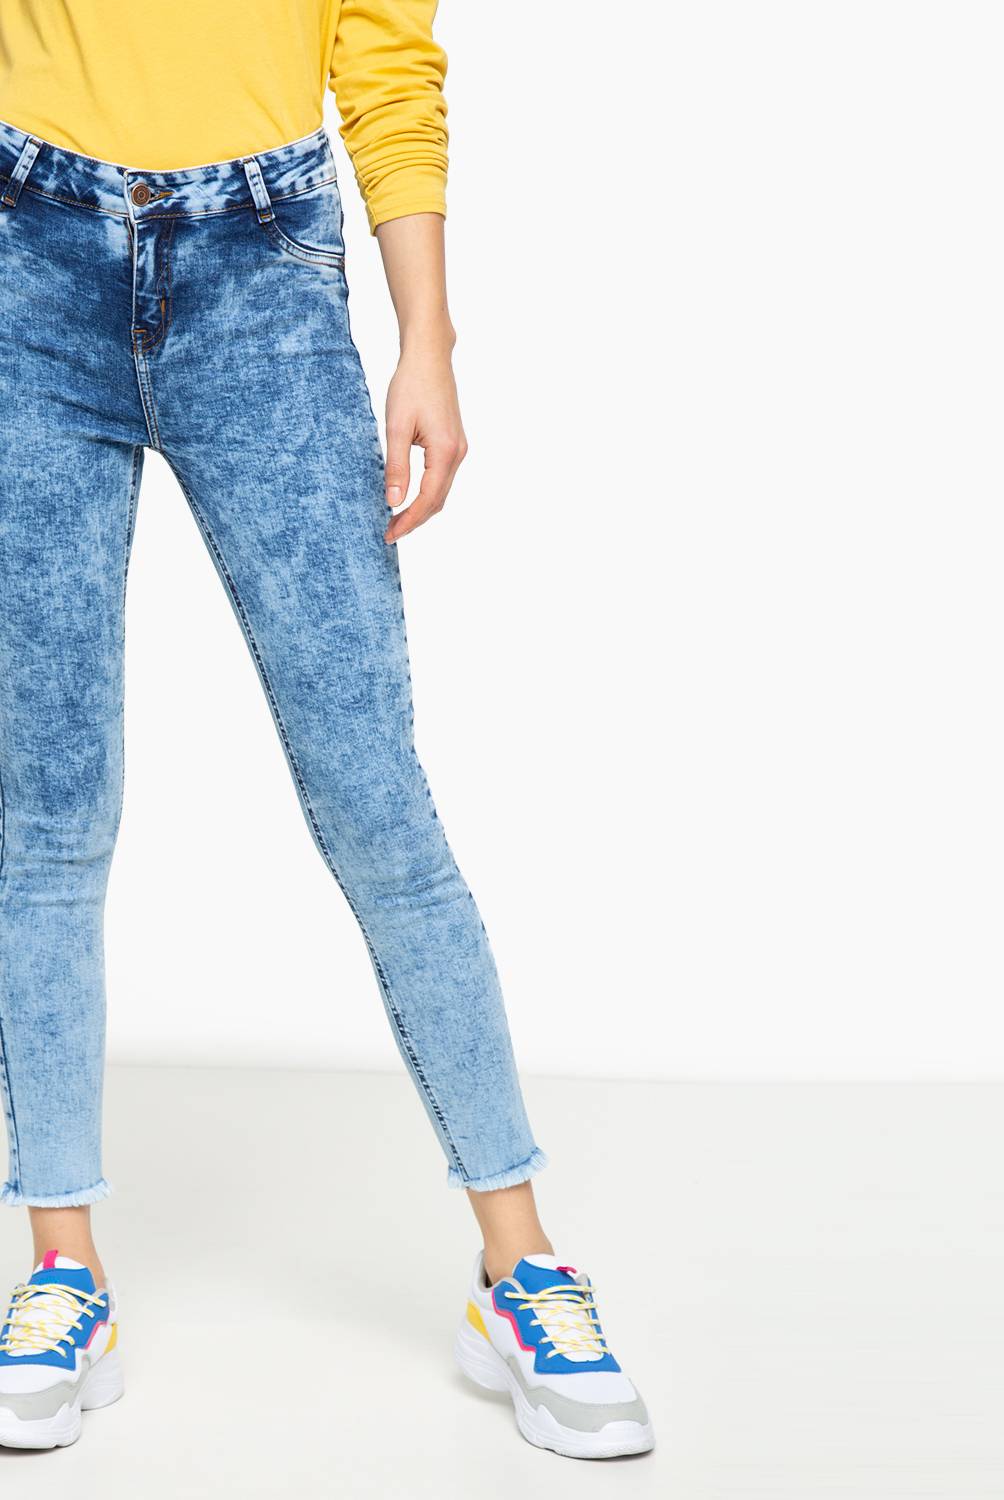 SYBILLA - Jeans de Algodón Mujer